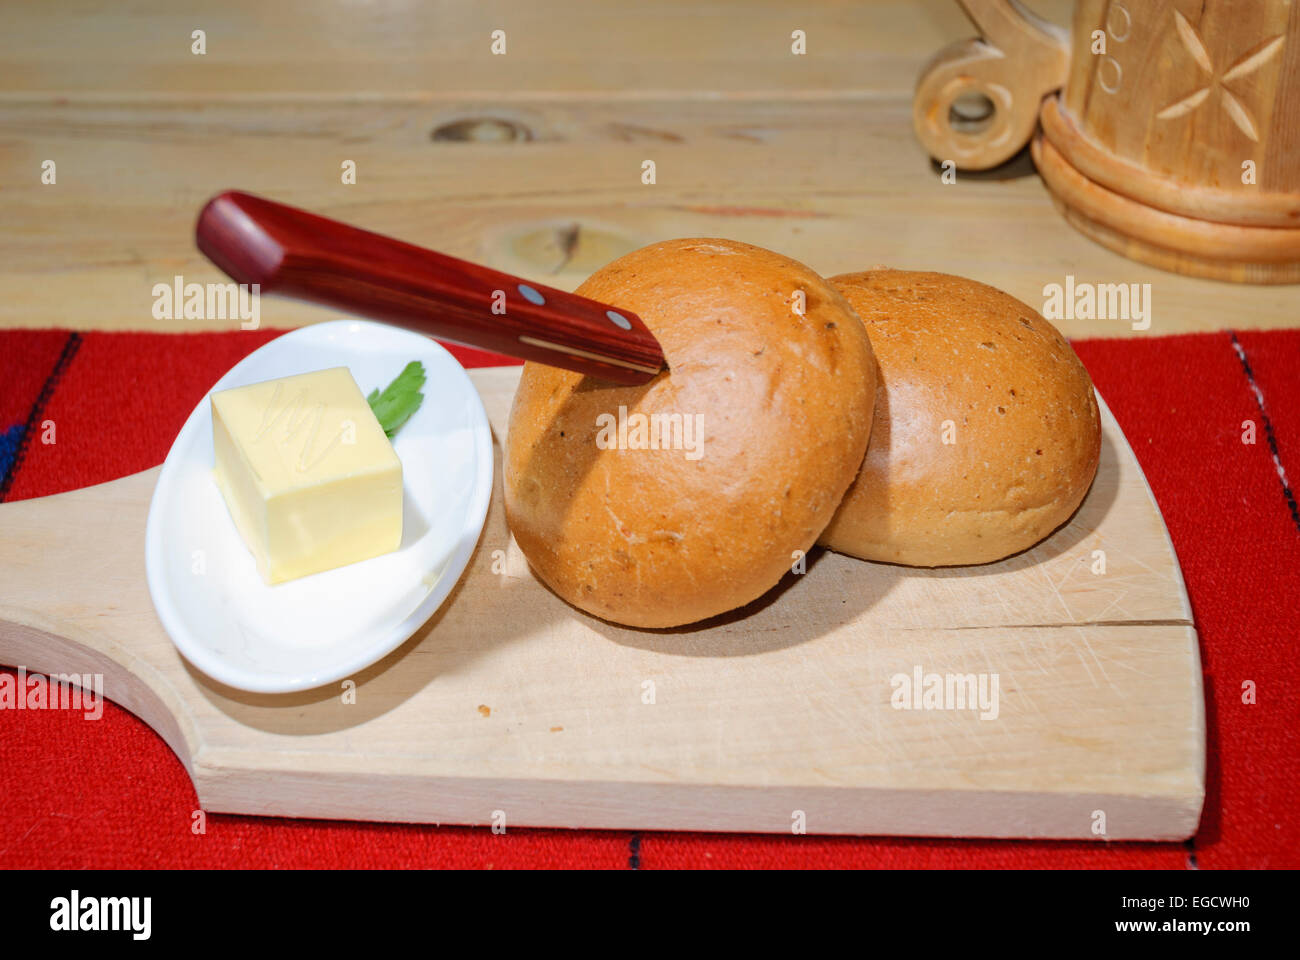 Comida tradicional Baltic - rollos de pan y una perilla de mantequilla sobre una tabla de cortar de madera, con un flagon de cerveza en el fondo Foto de stock